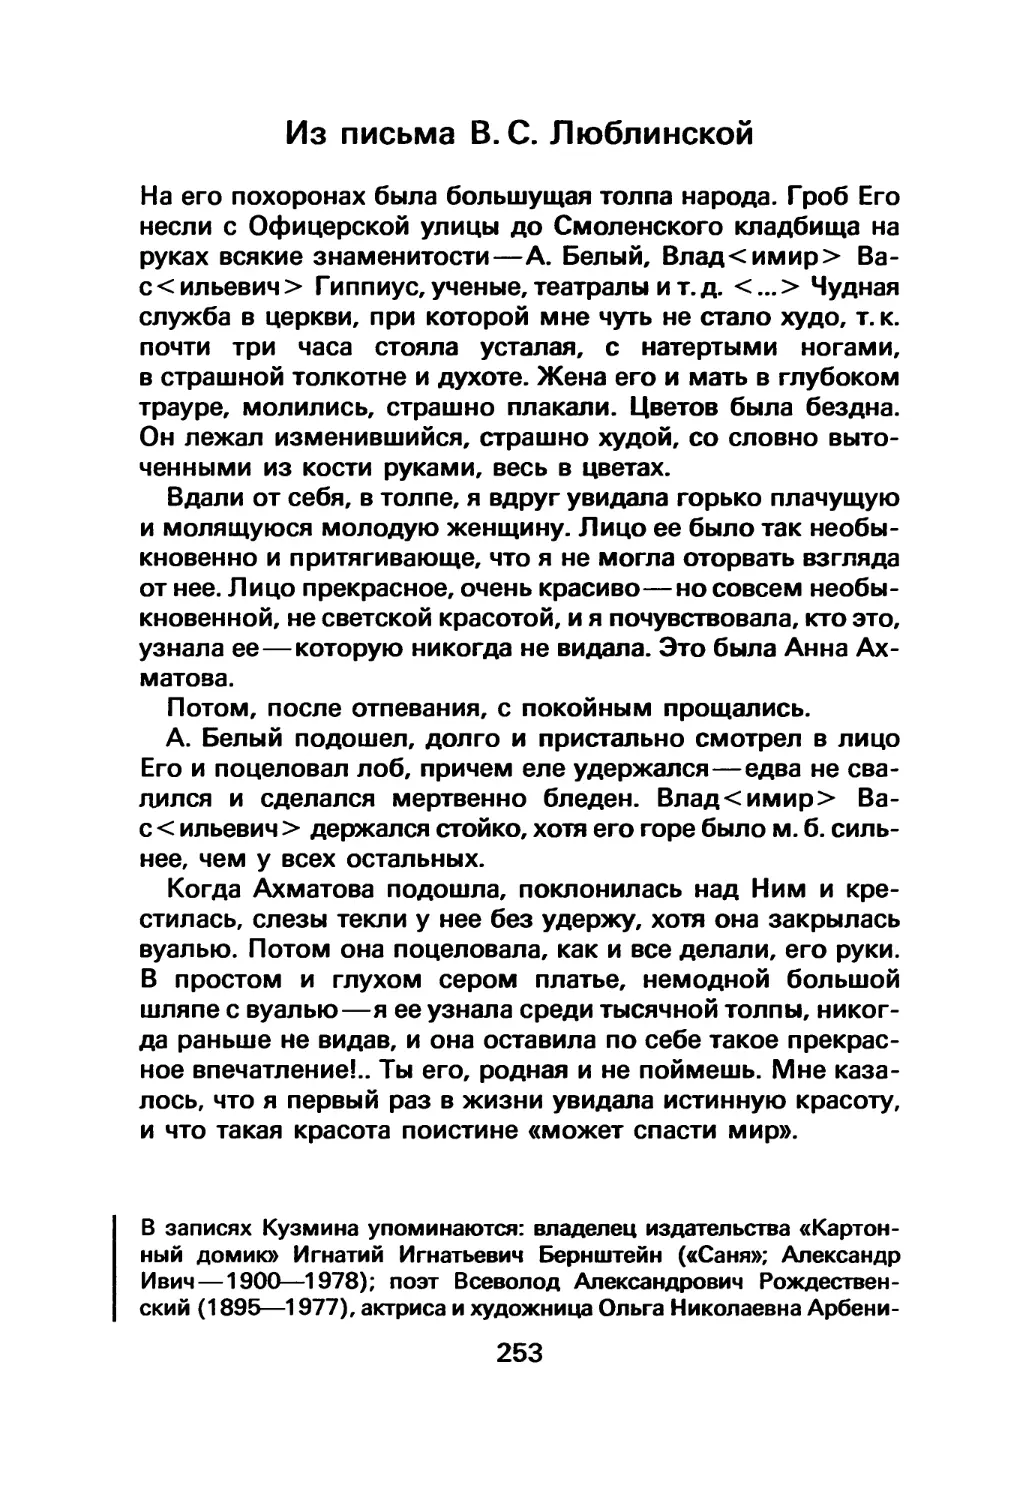 Из письма В. С. Люблинской